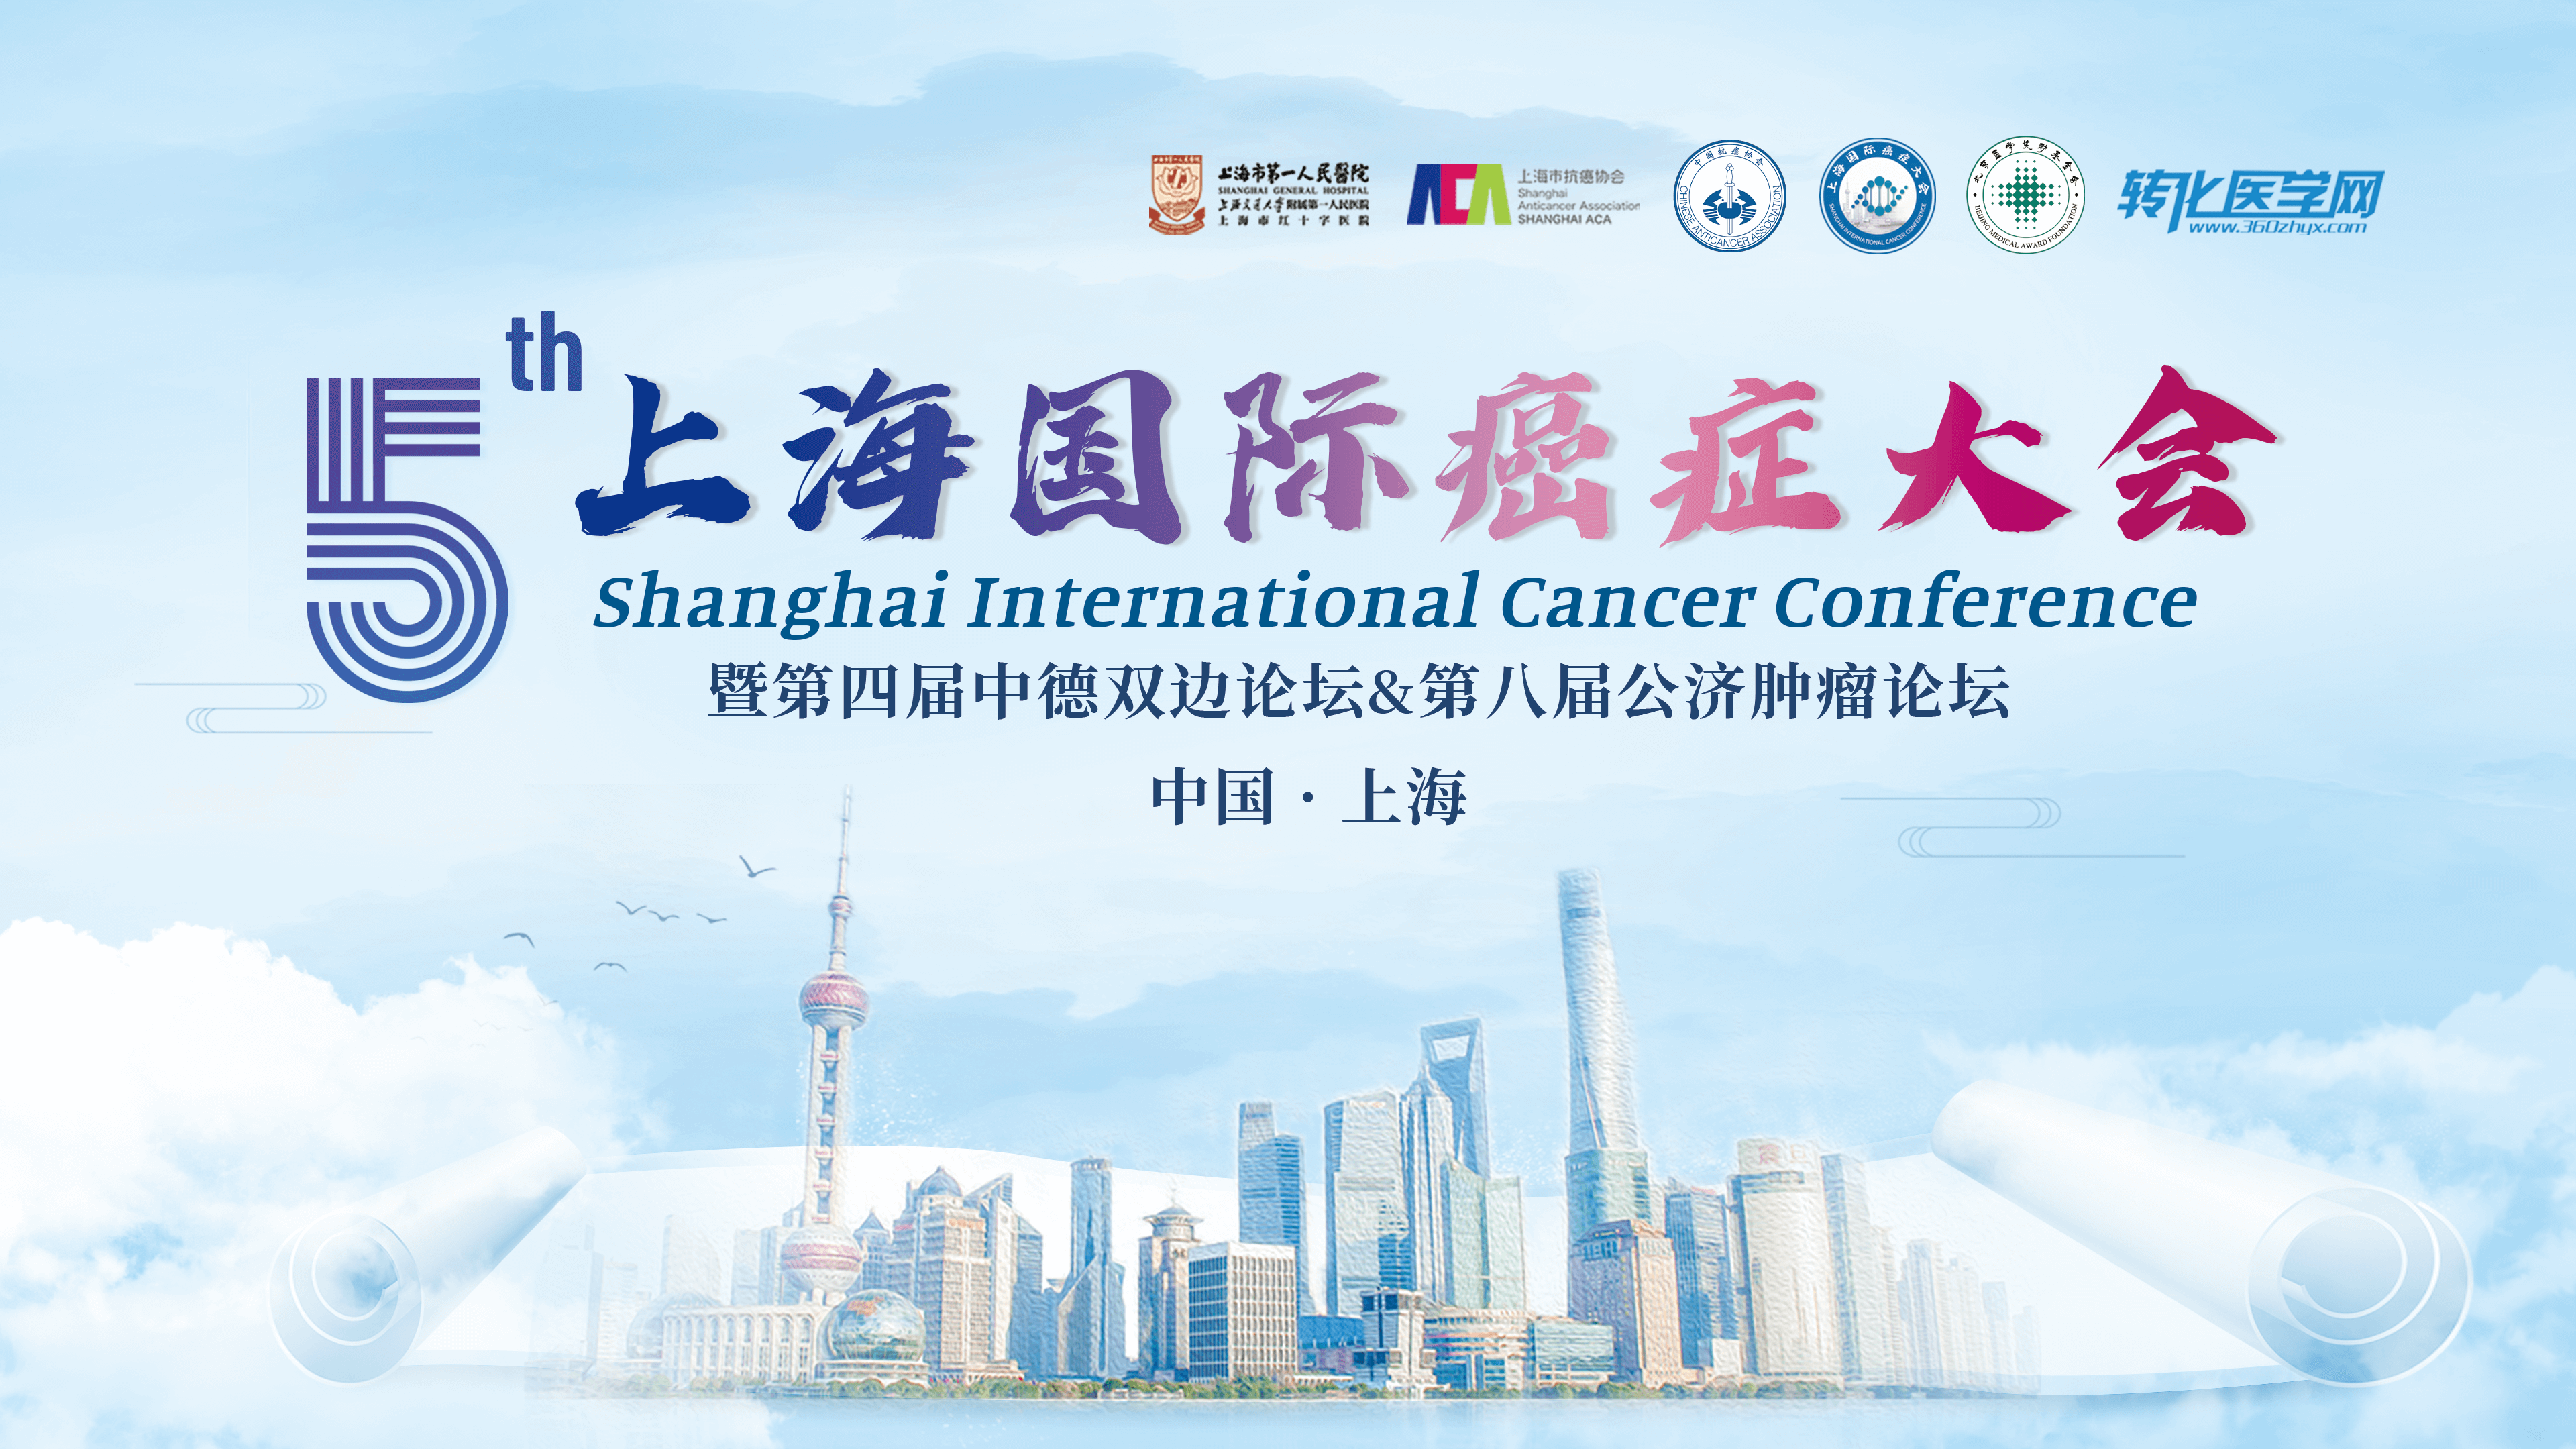 会议通知 | 吉尔生化邀您共赴第五届上海国际癌症大会